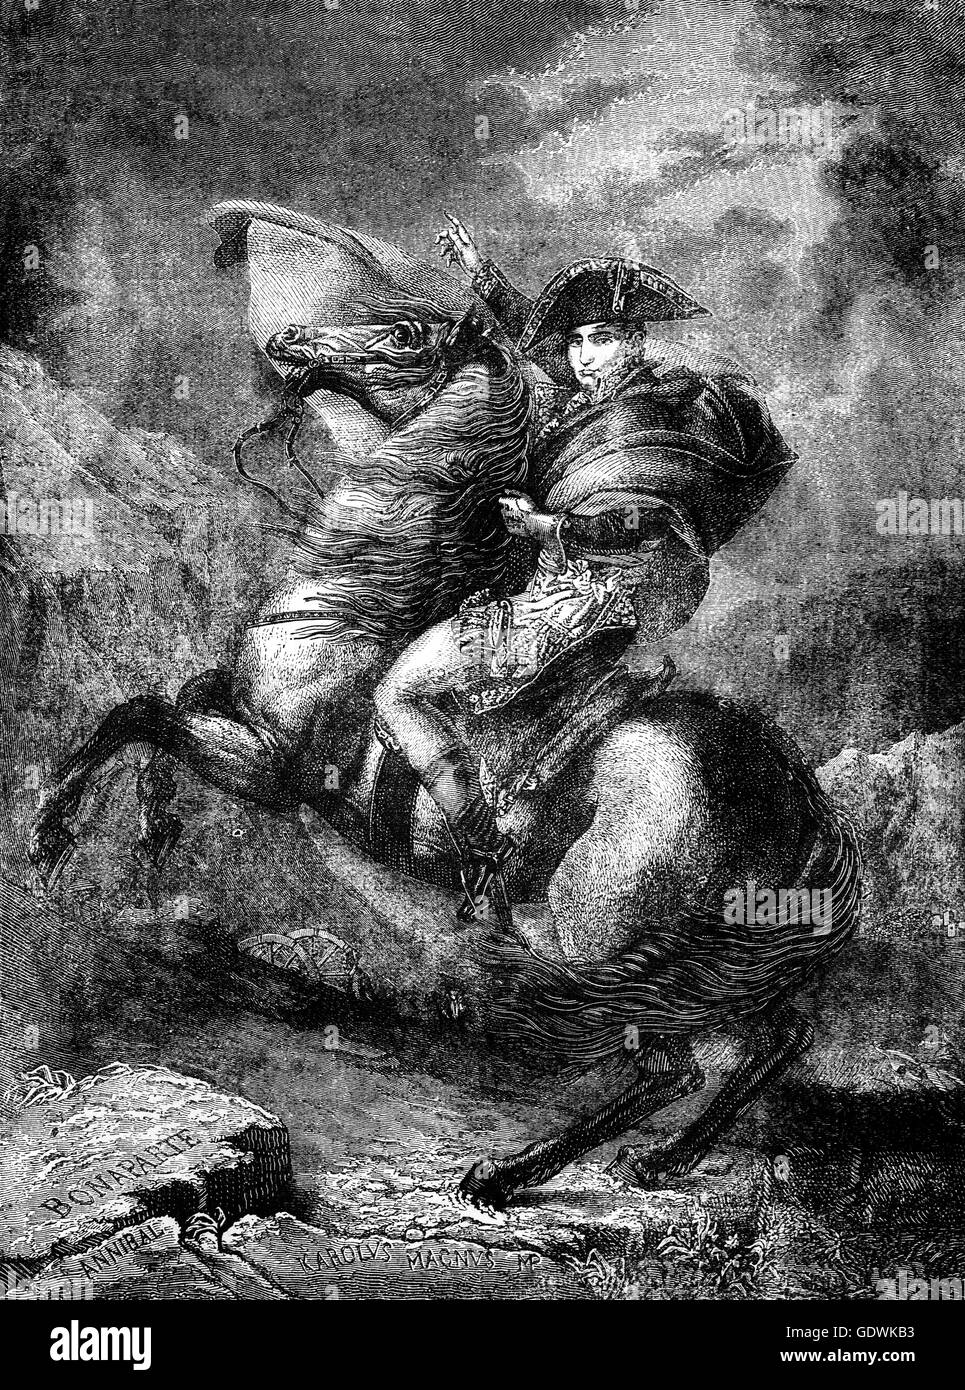 Napoléon traversant les Alpes, une vision idéalisée de l'armée de Napoléon et son crossingthe à travers les Grandes Alpes Col St Bernard en mai 1800 avant la bataille de Marengo. Banque D'Images